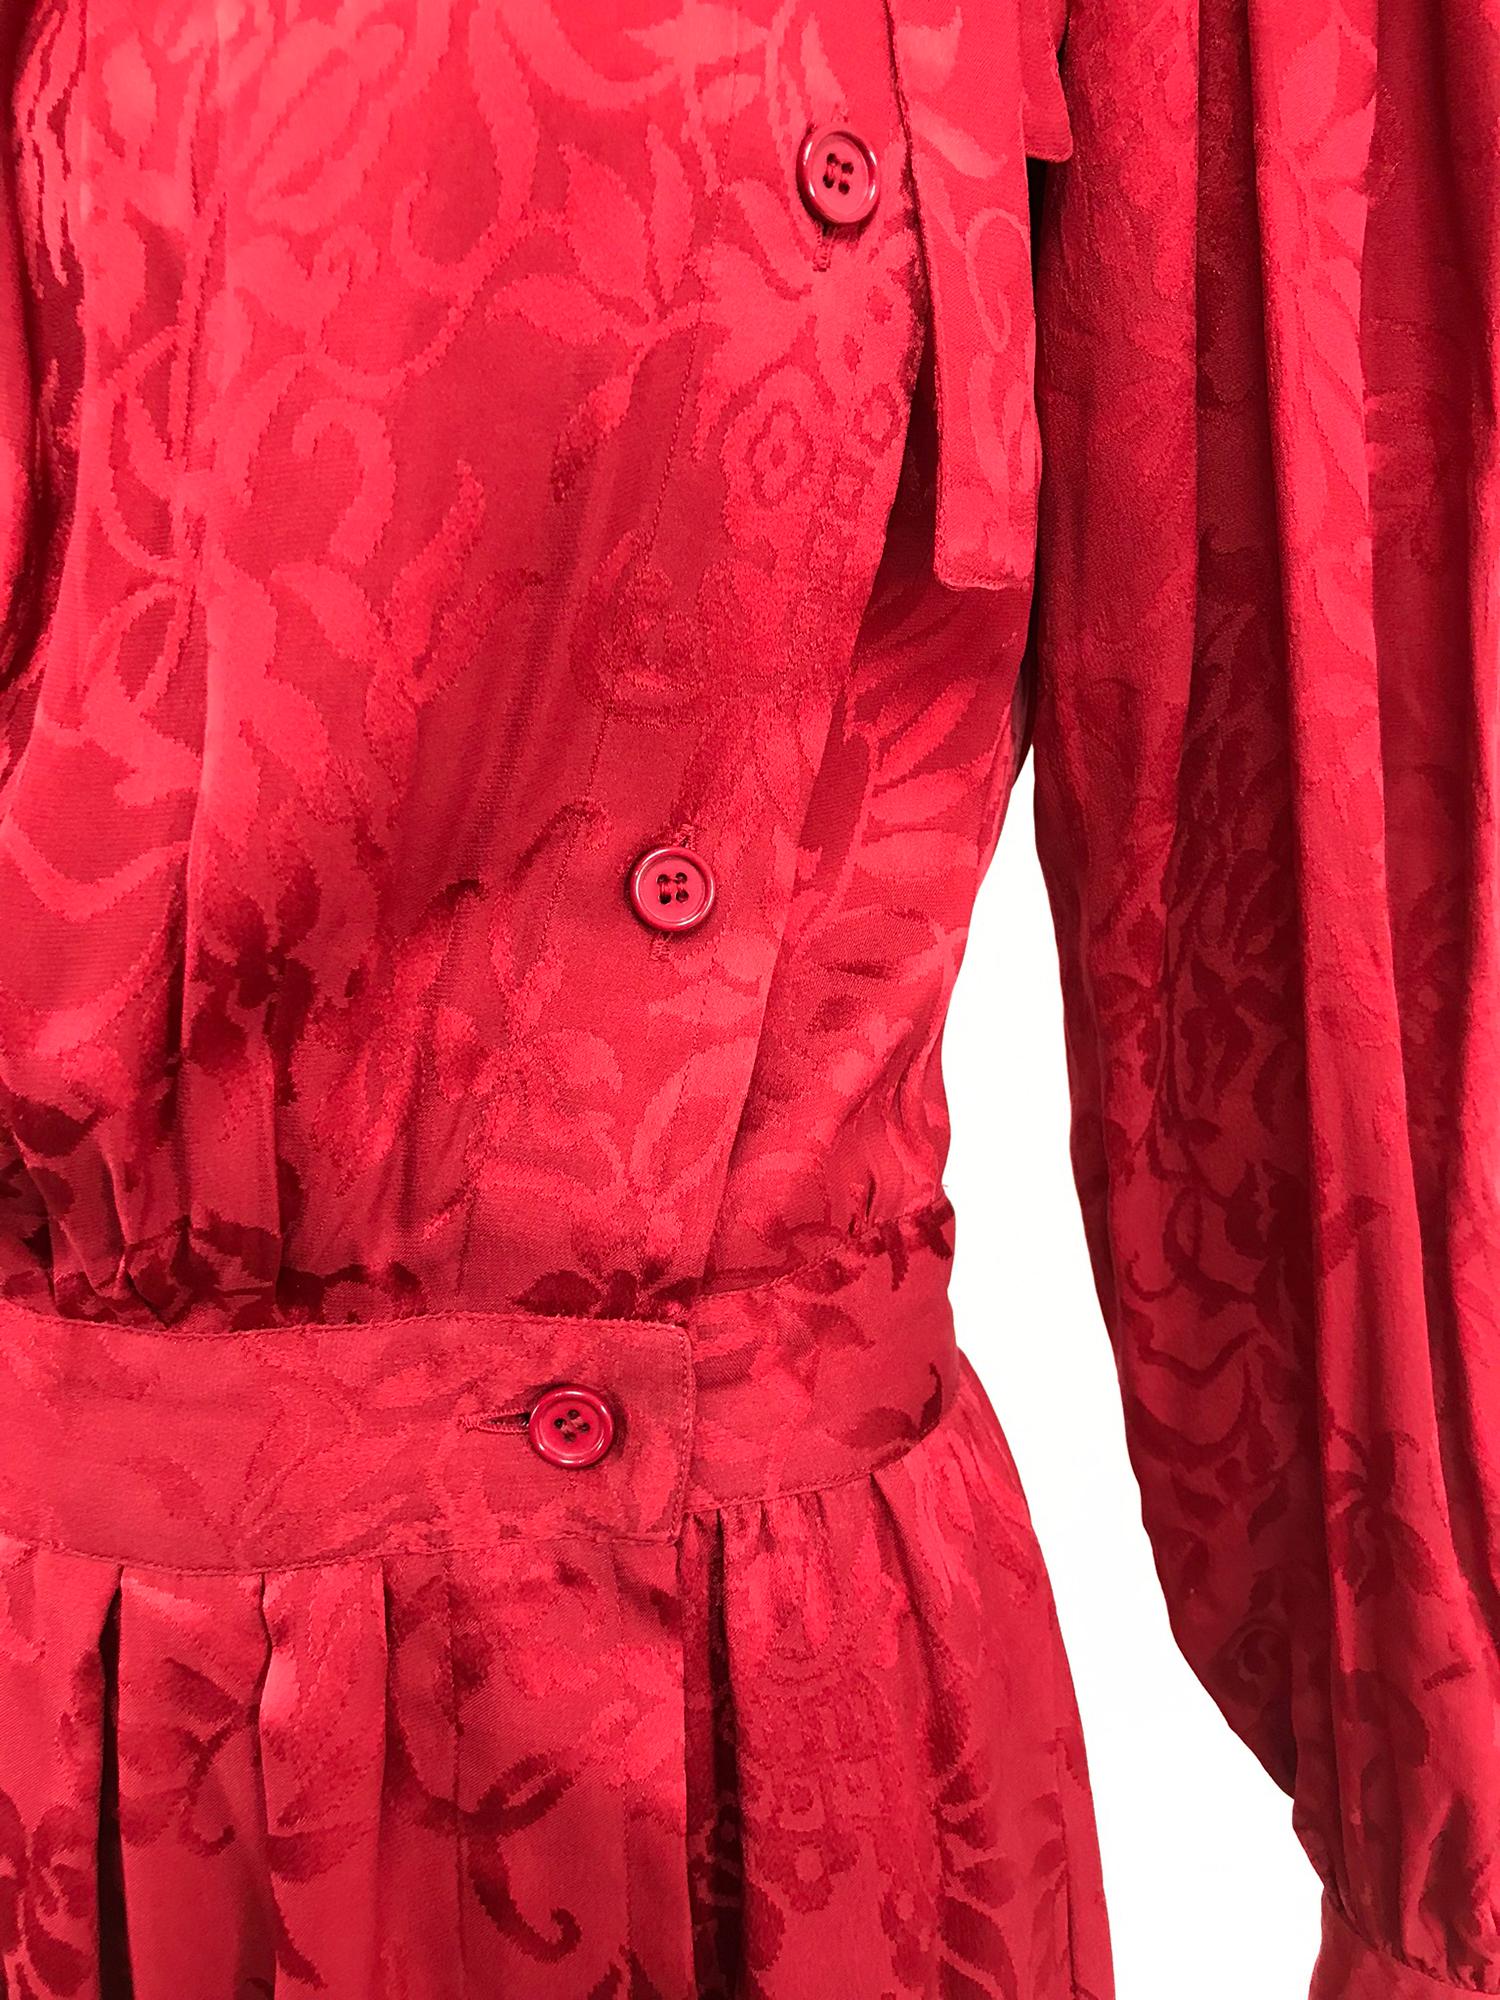 Rouge Yves Saint Laurent - Robe en jacquard de soie rouge avec nœud papillon, années 1970